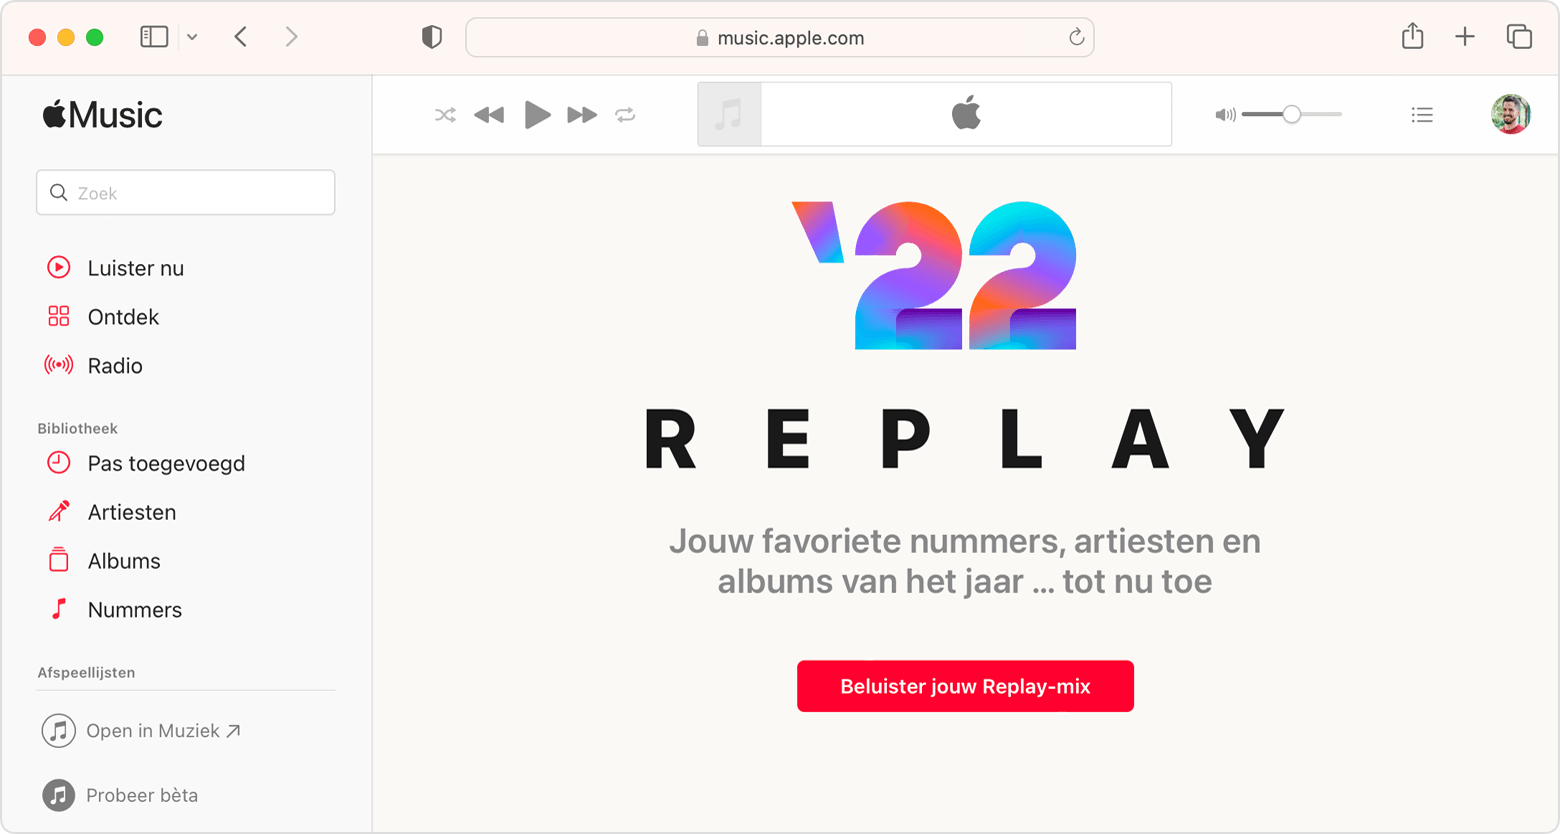 Safari-venster met de knop 'Beluister jouw Replay-mix' op replay.apple.com